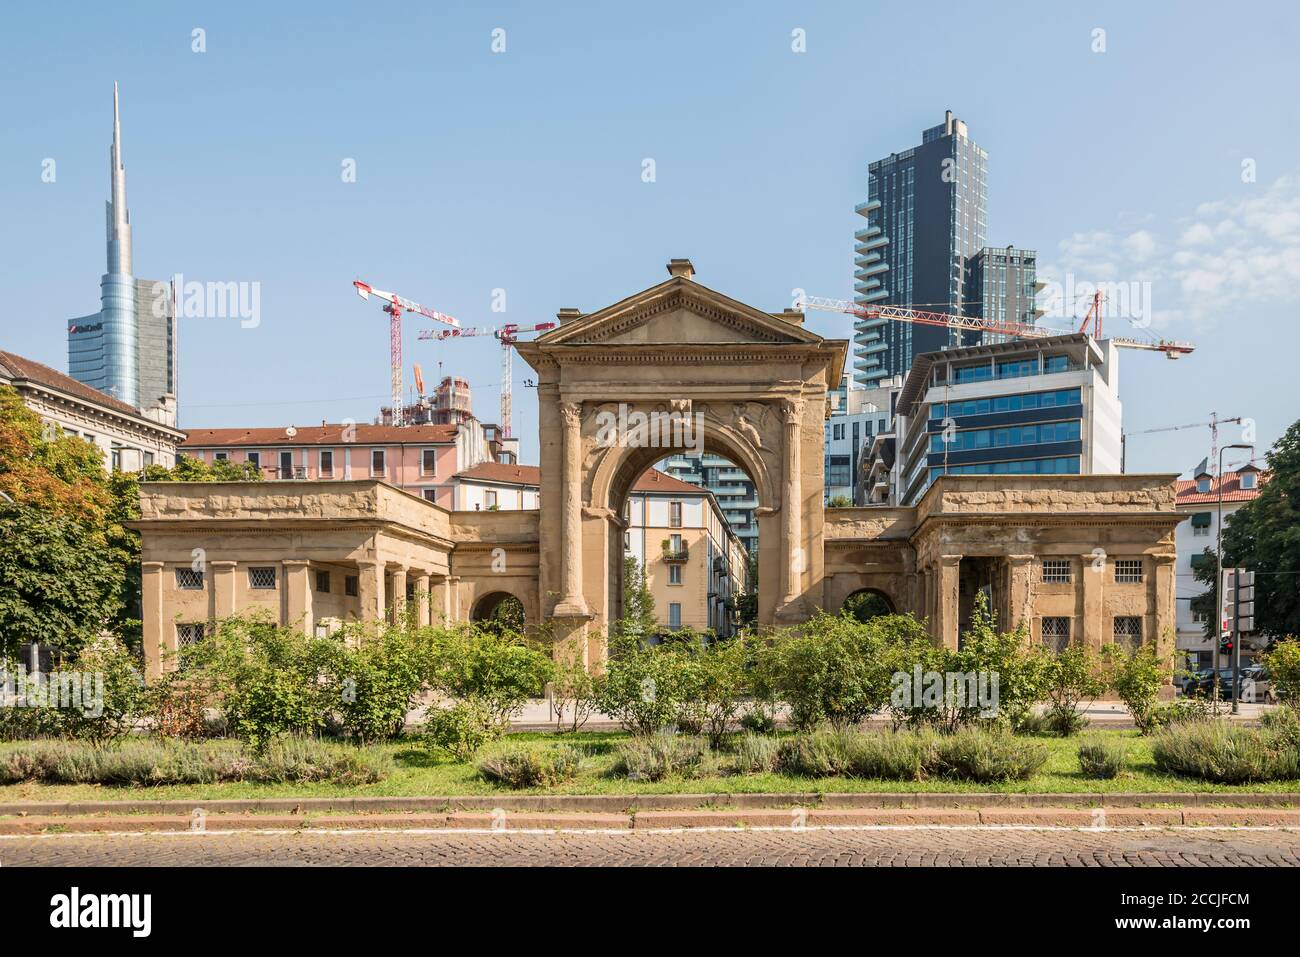 MILANO, ITALIA - Agosto 20 2020: Paesaggio urbano con nuovi grattacieli di centro commerciale sviluppo urbano che incombe fuori dall'ingresso monumentale della città, girato su augus Foto Stock